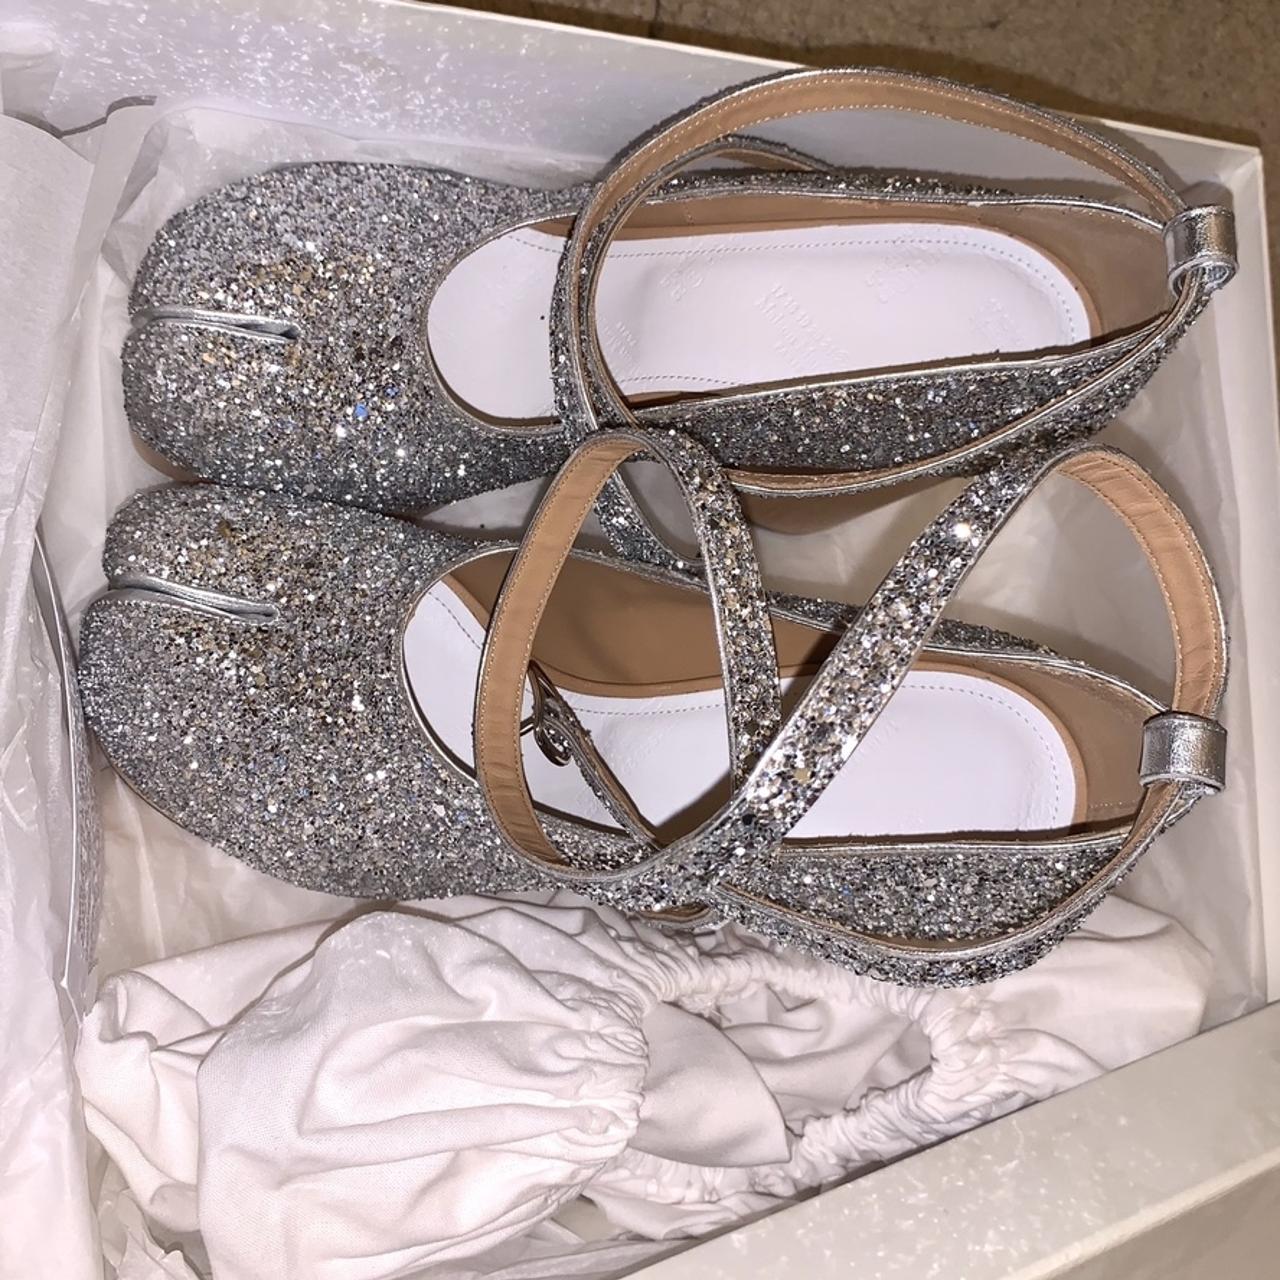 Mansion Margiela Tabi Shoes Amazing silver glitter - Depop